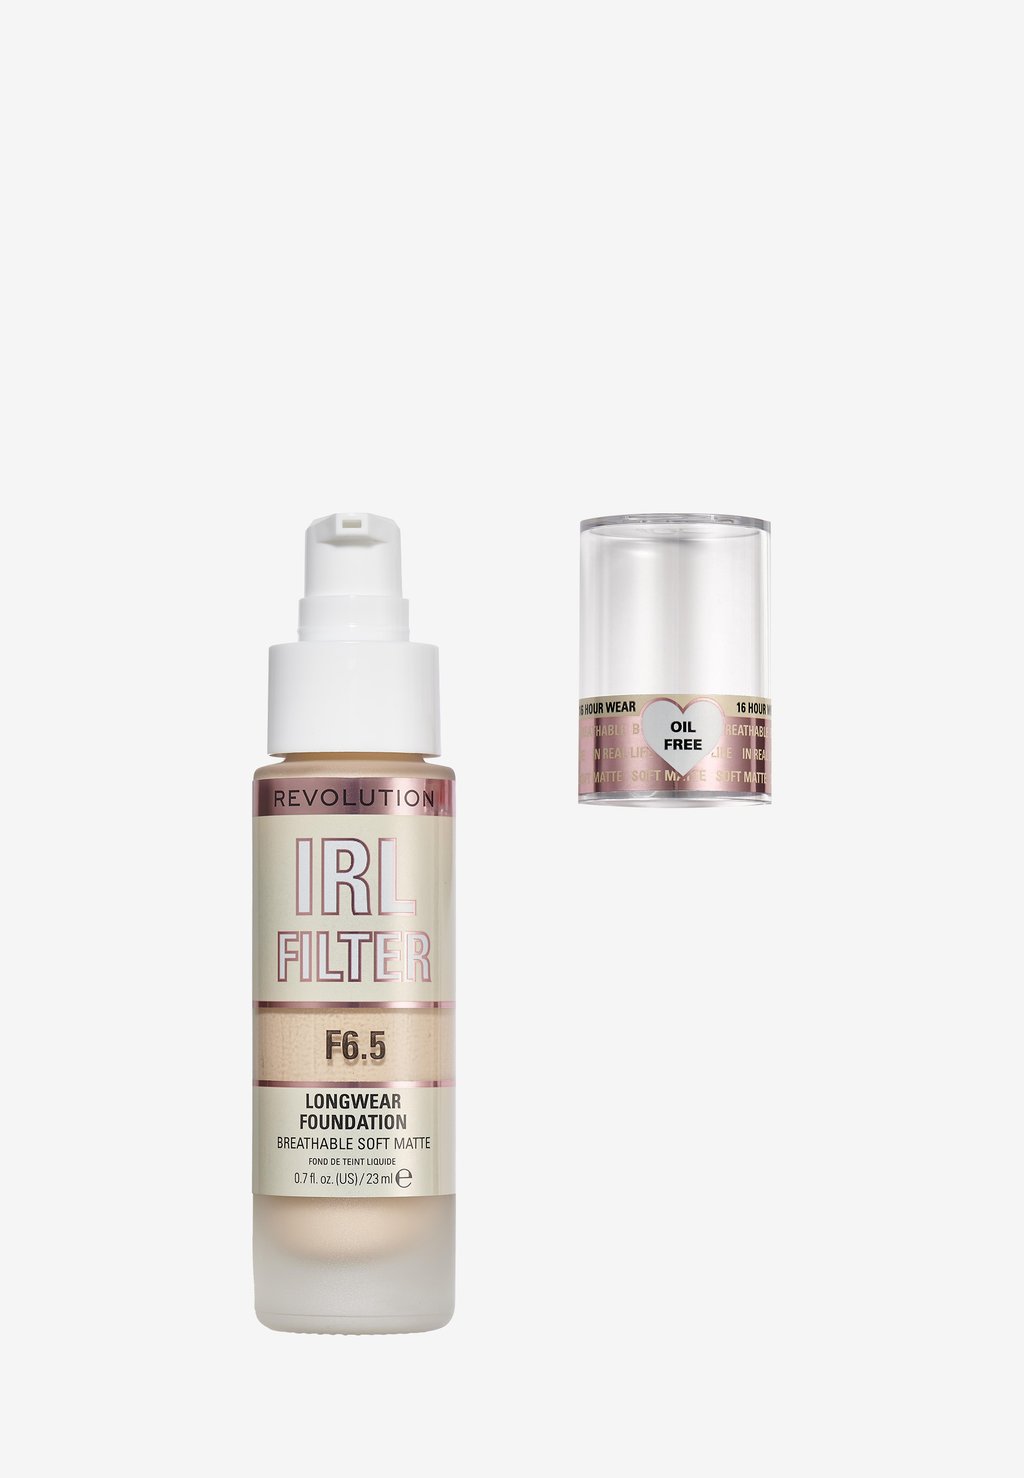 Тональный крем Irl Filter Longwear Foundation Makeup Revolution, цвет f6.5